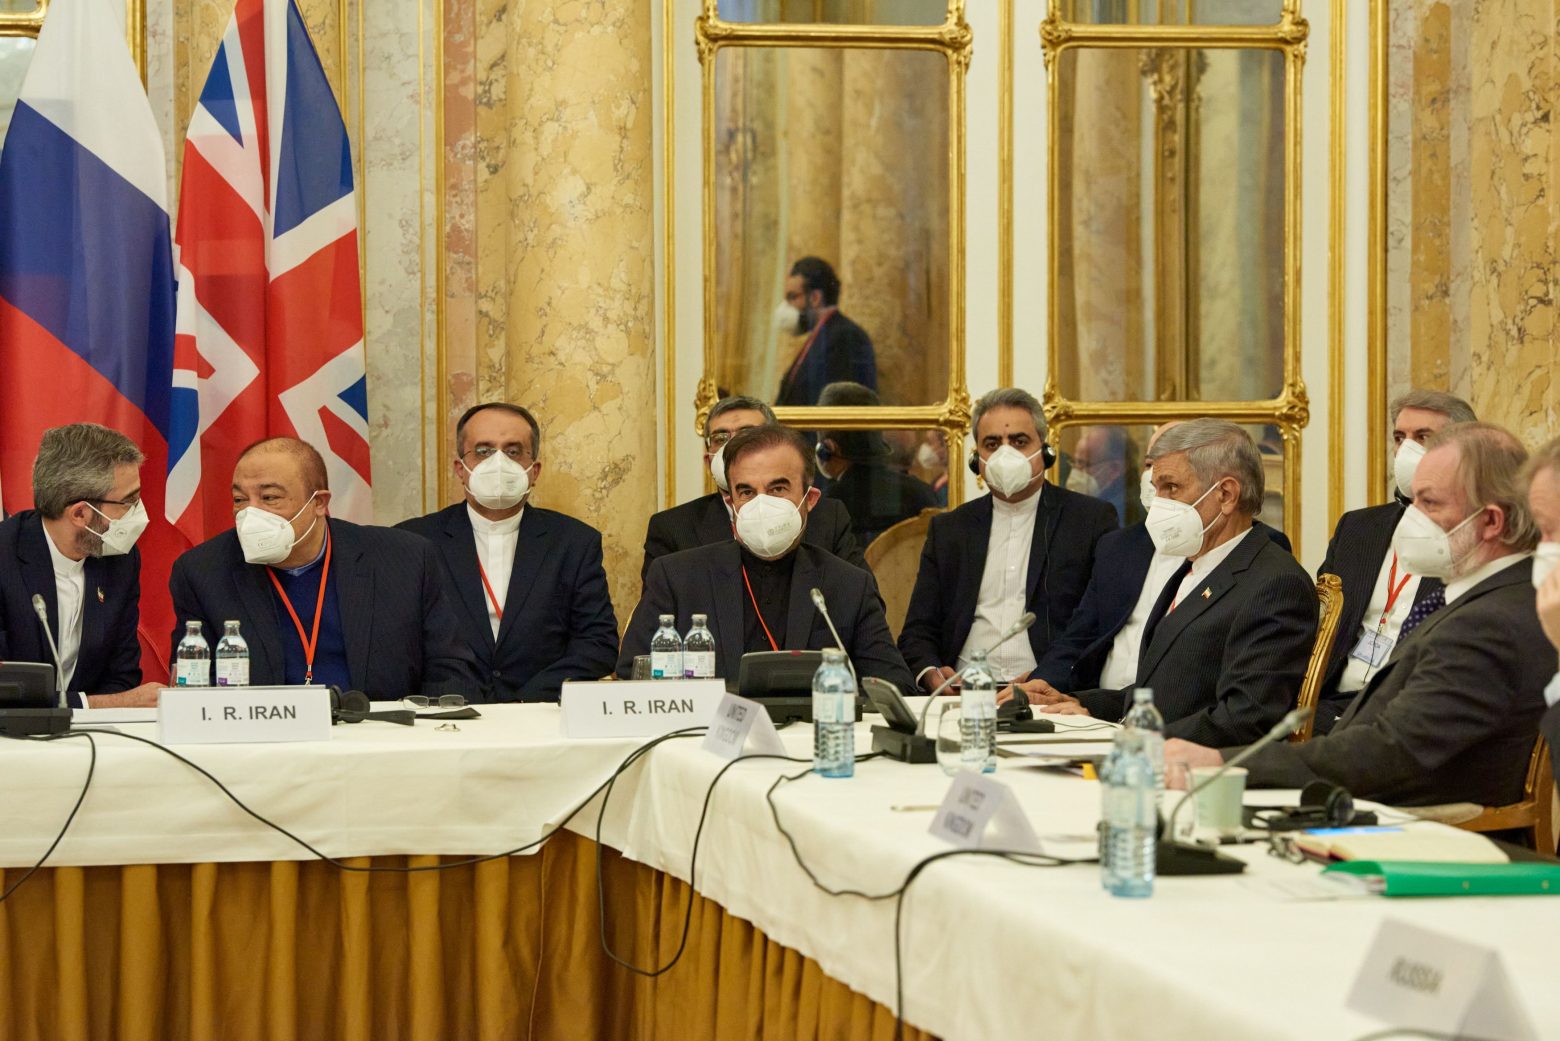 Ιράν - Ευρωπαϊκή «απογοήτευση και ανησυχία» μετά τις συνομιλίες για το πυρηνικό πρόγραμμα